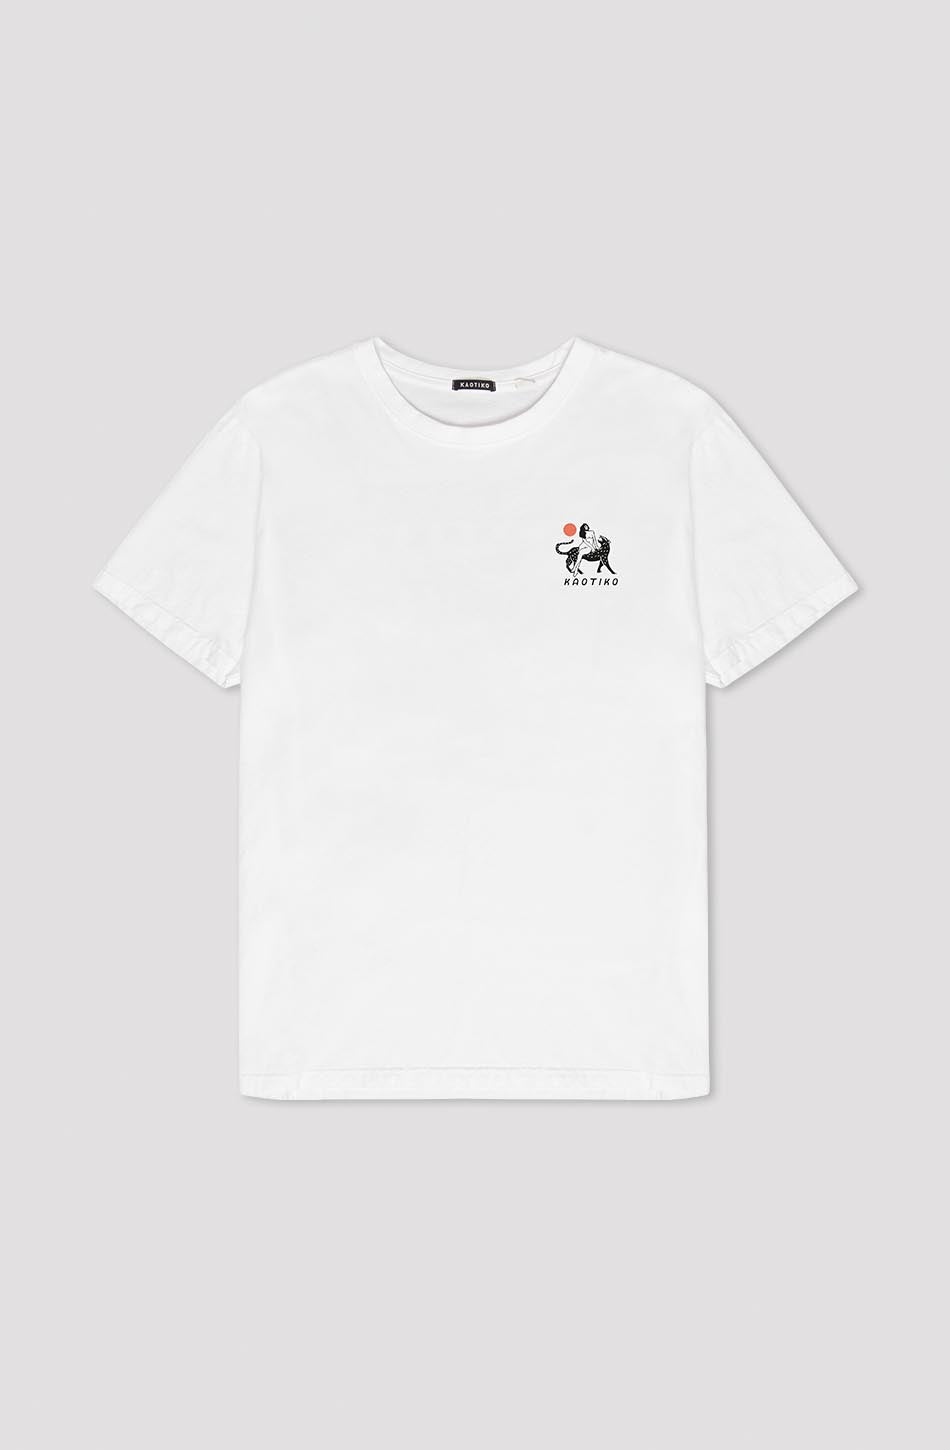 Washed Neverland White T-Shirt